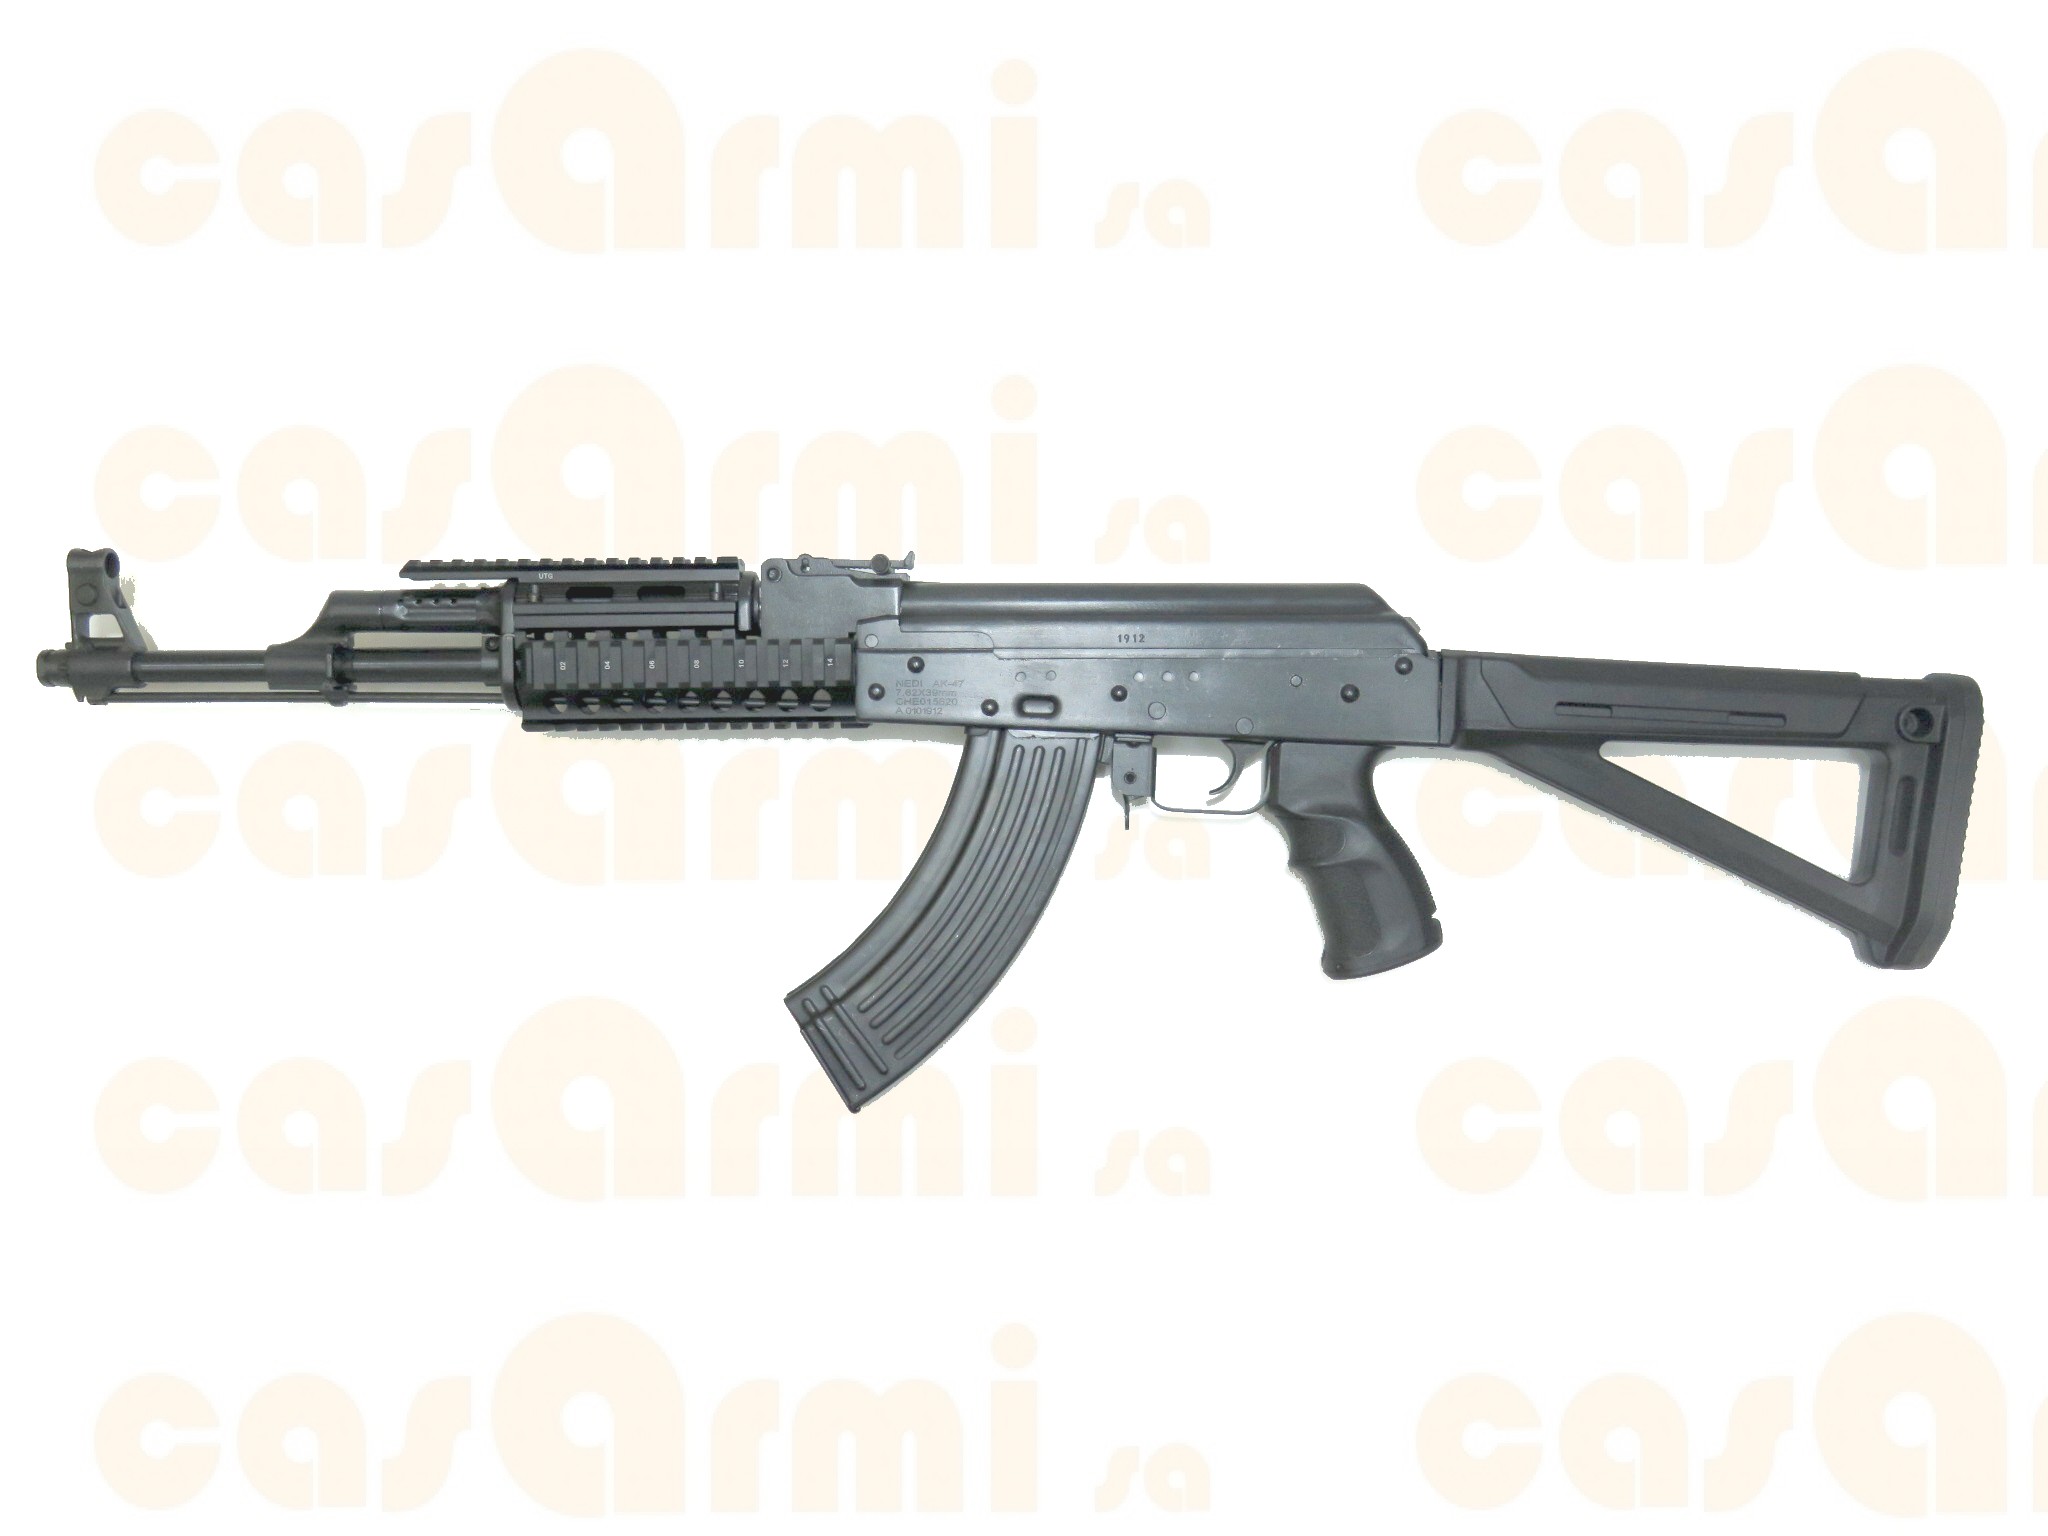 Nedi AK-47, modificato con Ak Pistol grip, Quad rail handguard, compensatore Claw Gear e Magpul MOE AK Stock 7.62x39